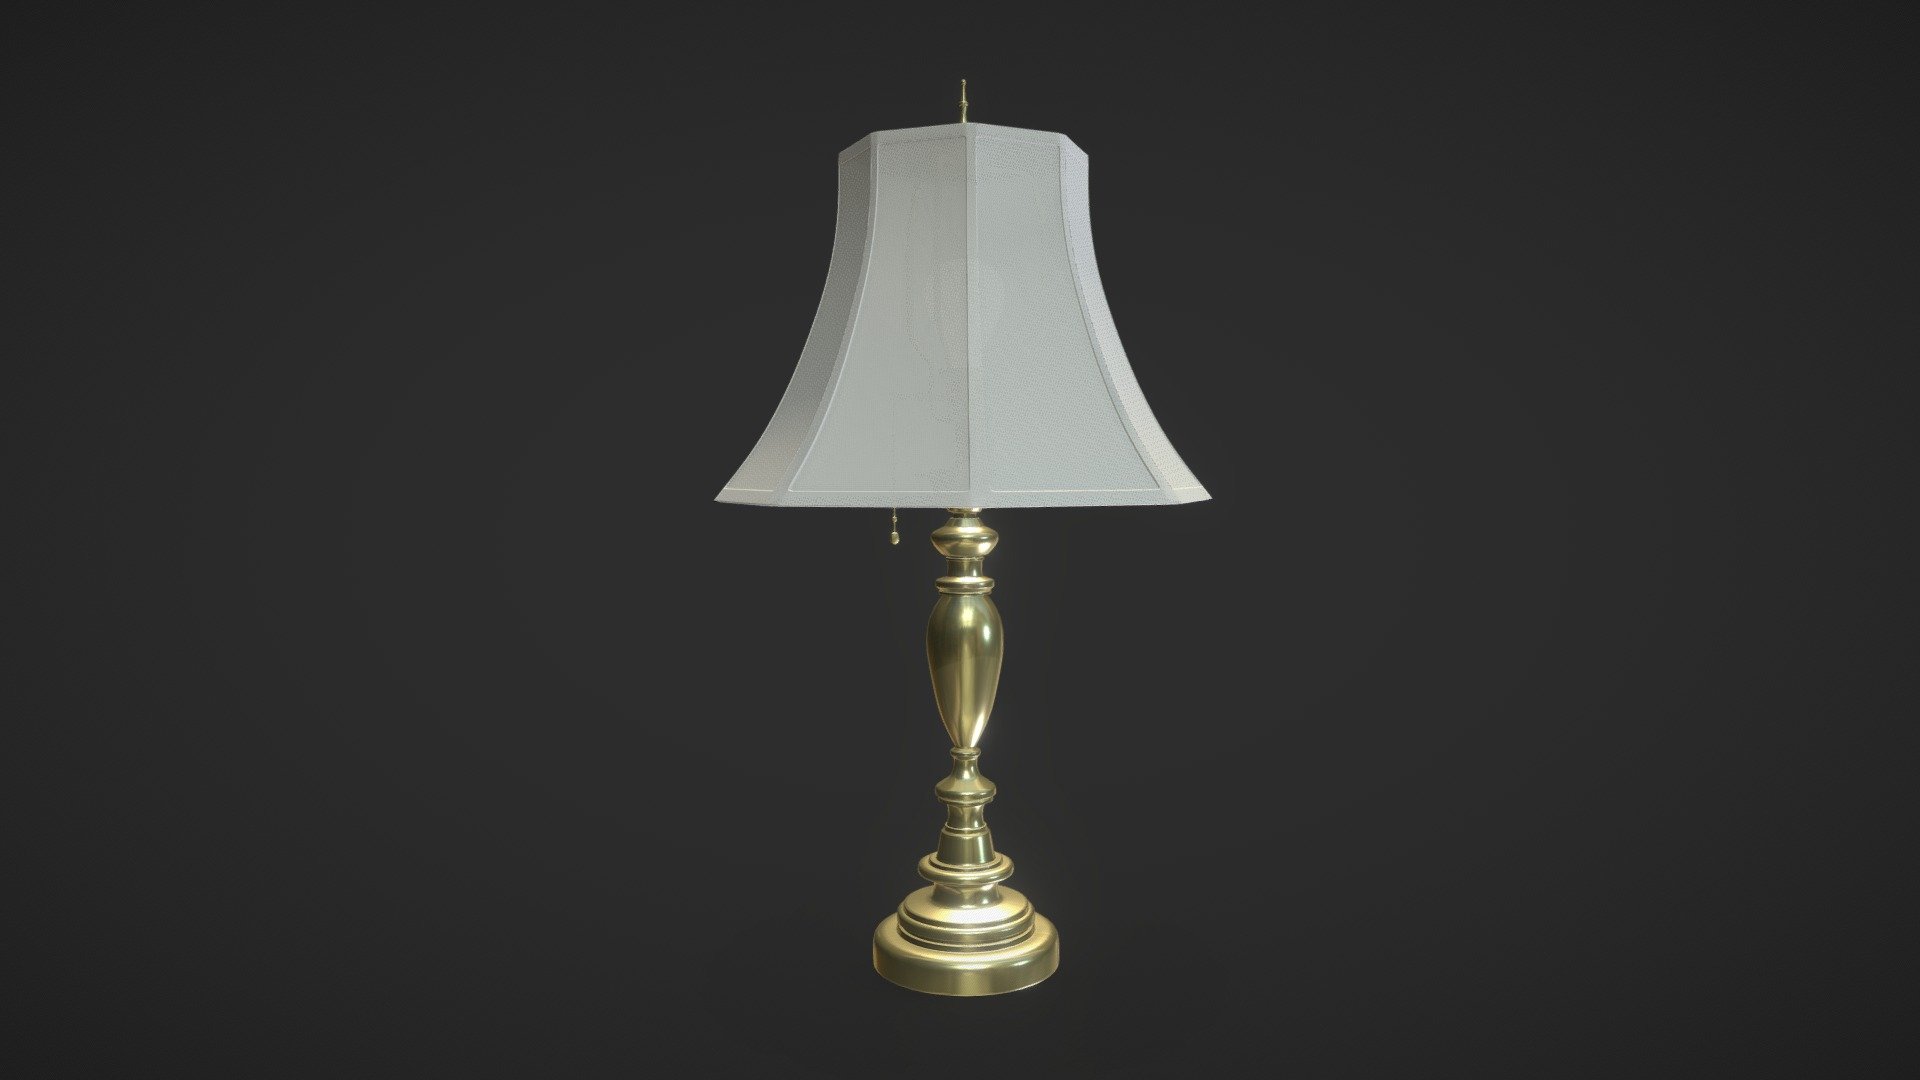 Old desk lamp - 3D model by MaciejRylko 3d model